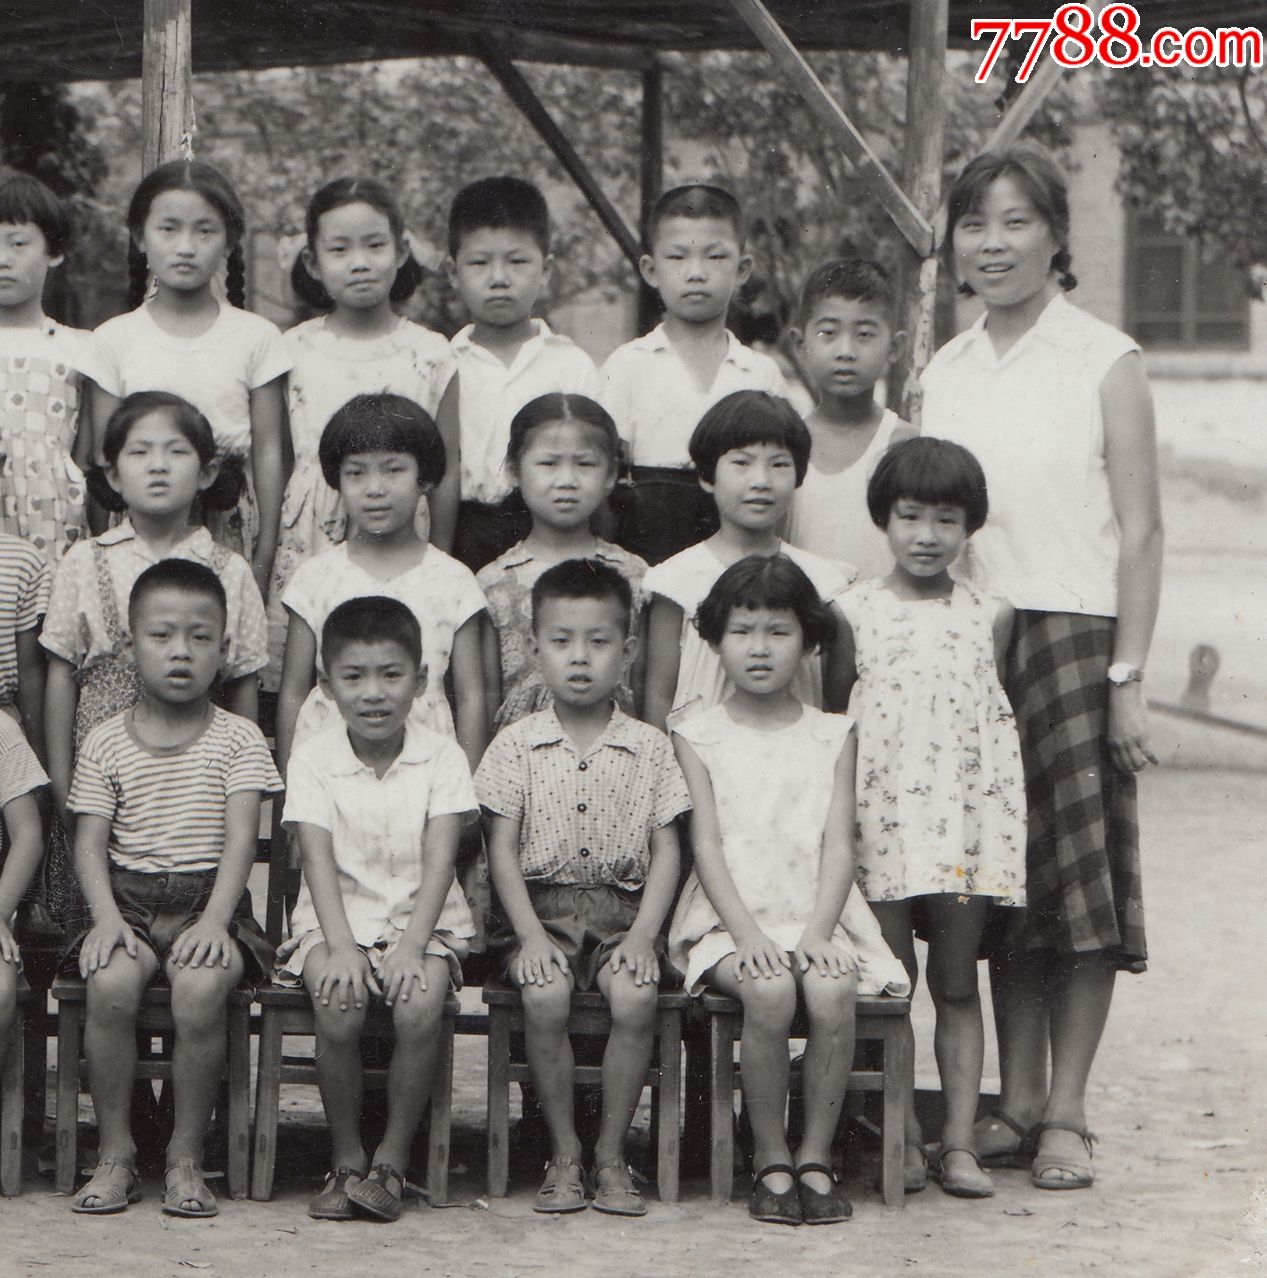 1965年,天津东风照相馆,摆放的整整齐齐小手、